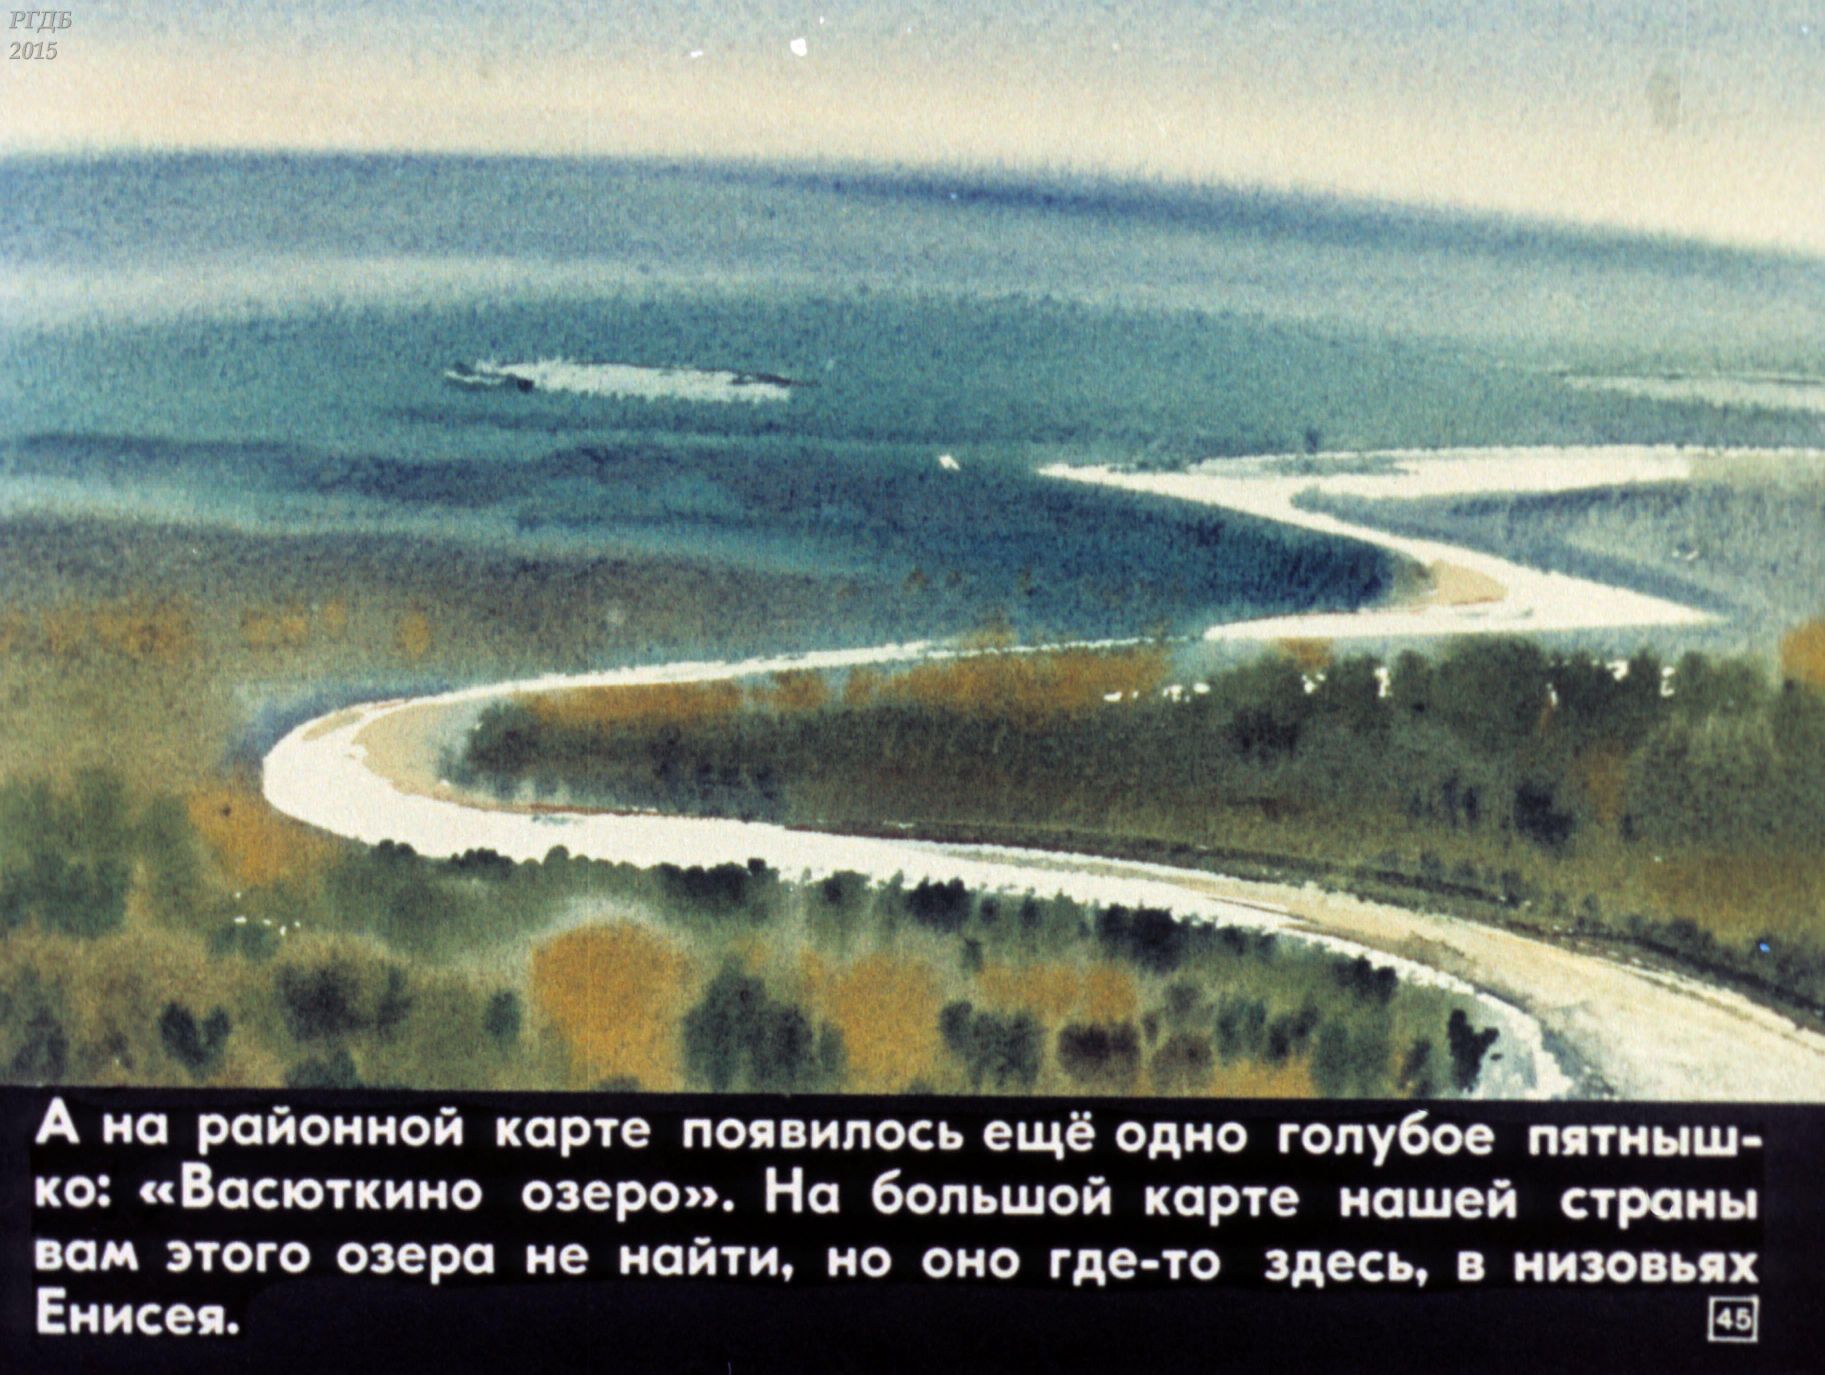 Карта васюткино озеро 5. Низовья Енисея Васюткино озеро. Васюткино озеро. Иллюстрация к рассказу Васюткино озеро. Рисунок к рассказу Васюткино озеро.